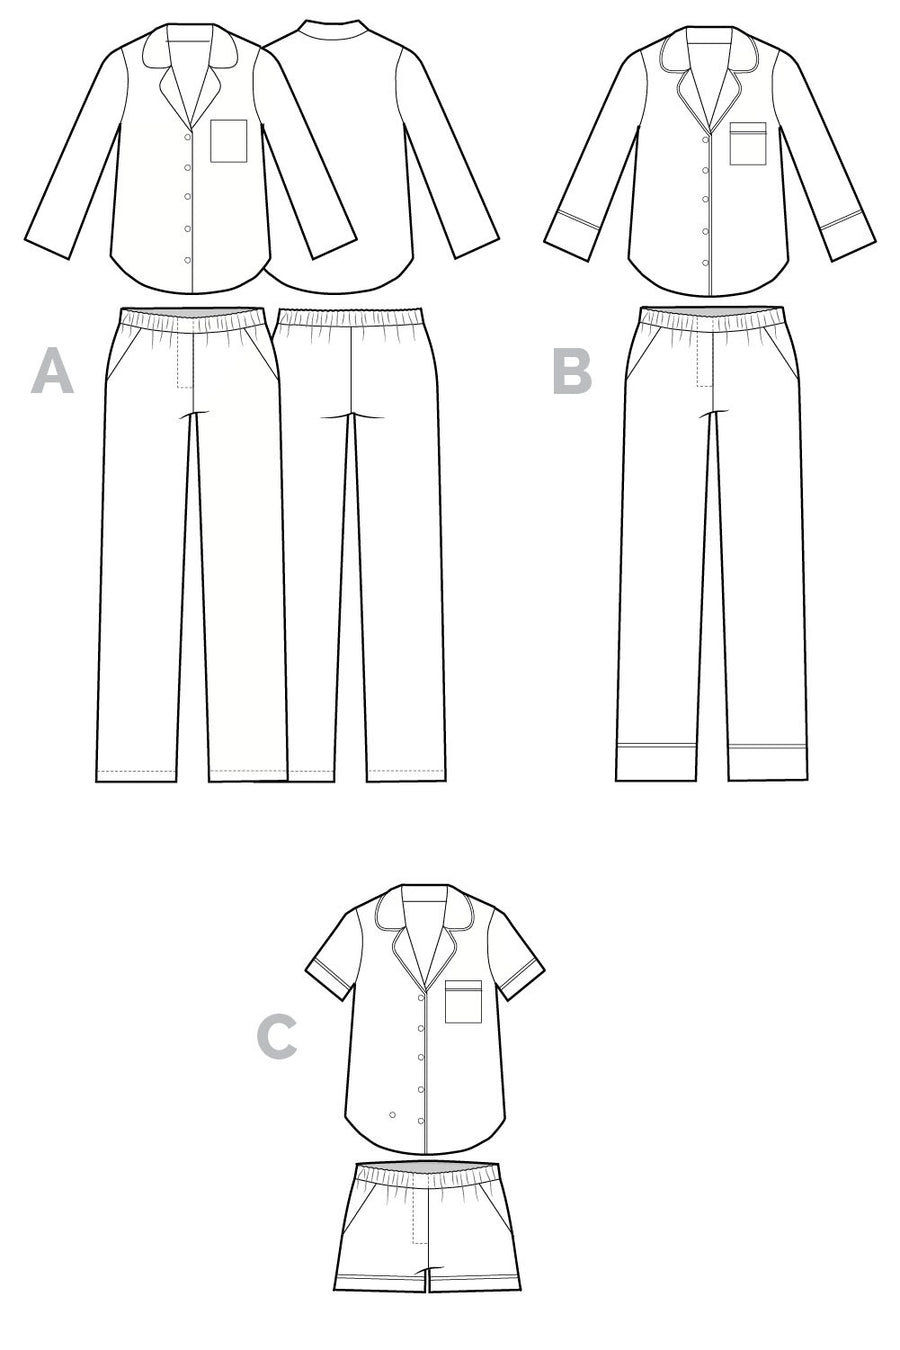 Carolyn Pajama pattern // Technical flats // Closet Core Patterns